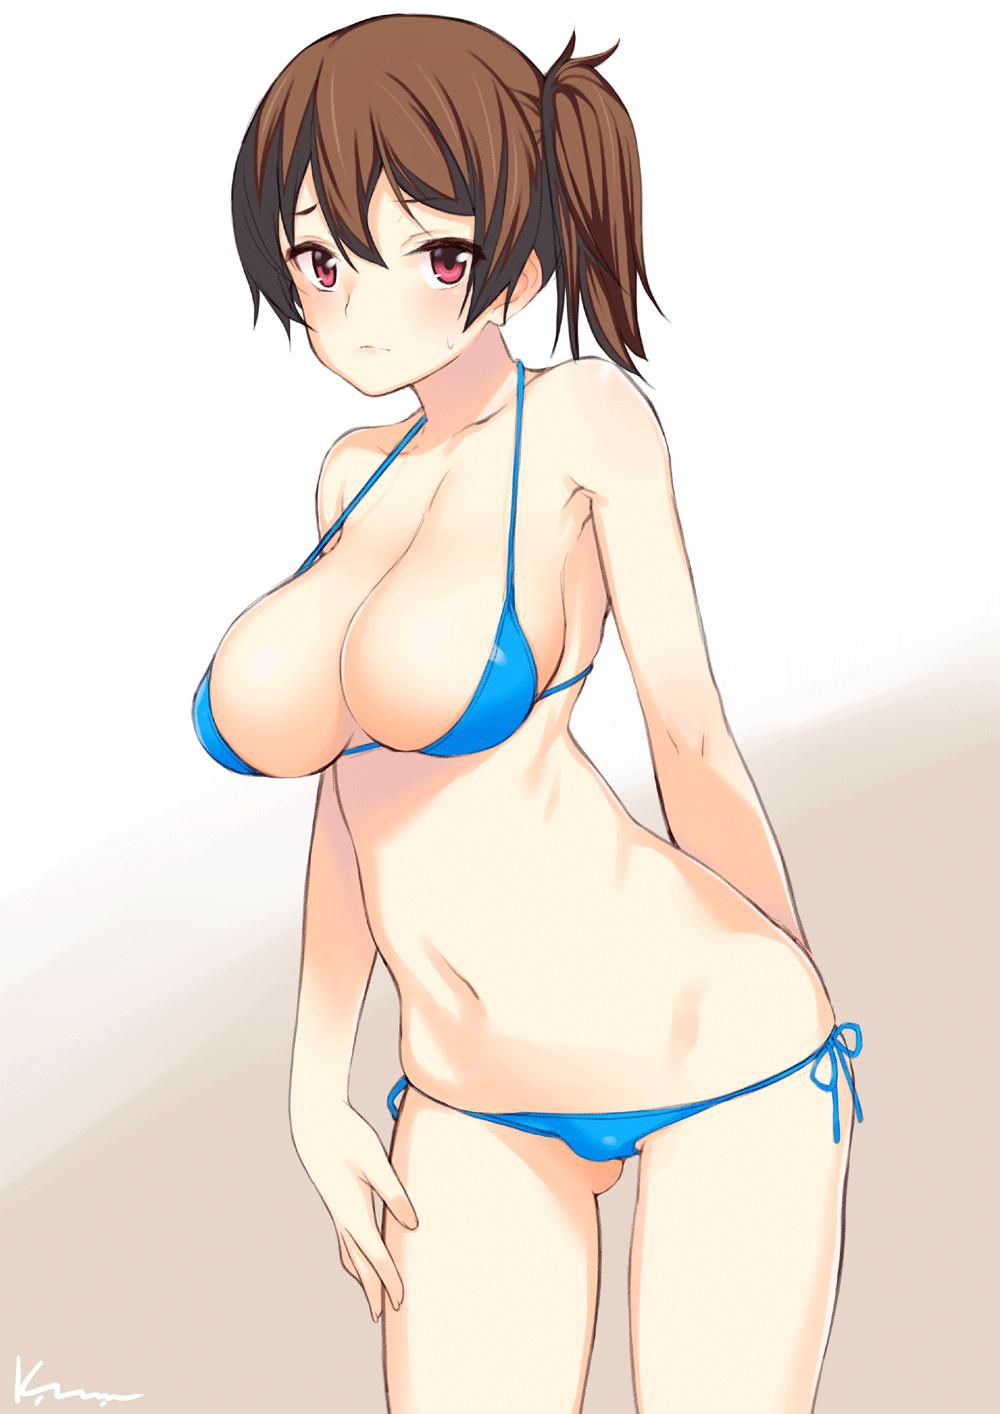 Porori Chikuni! Secondary erotic picture of a girl in a micro bikini wwww part3 3